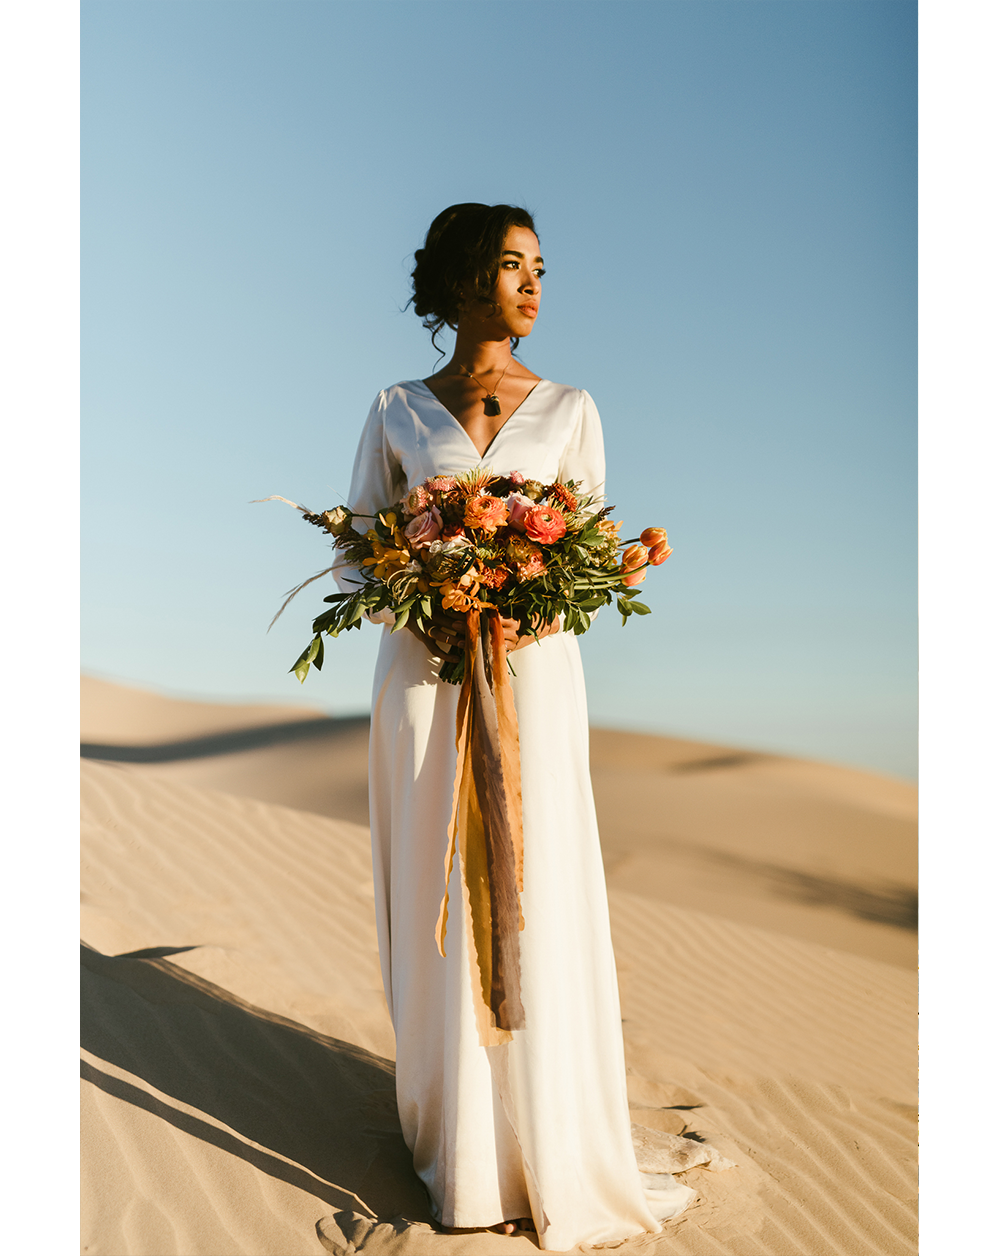 Frida enamorada boda en el desierto de baja california mexico 20.png